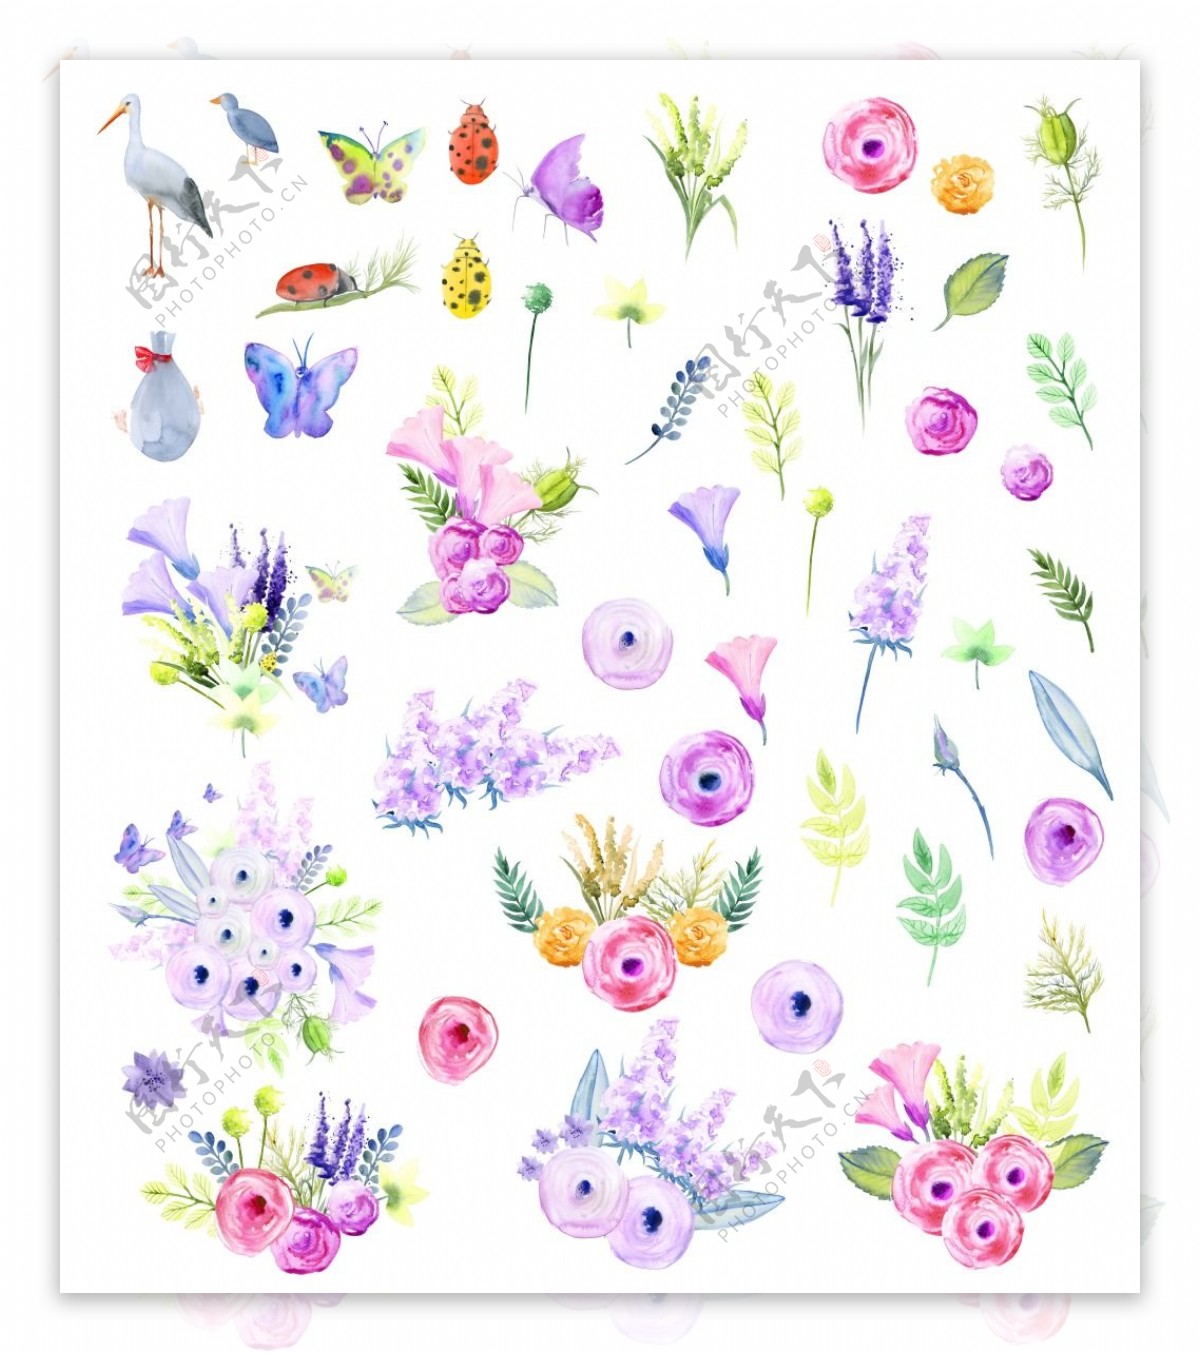 水彩绘花卉图标元素